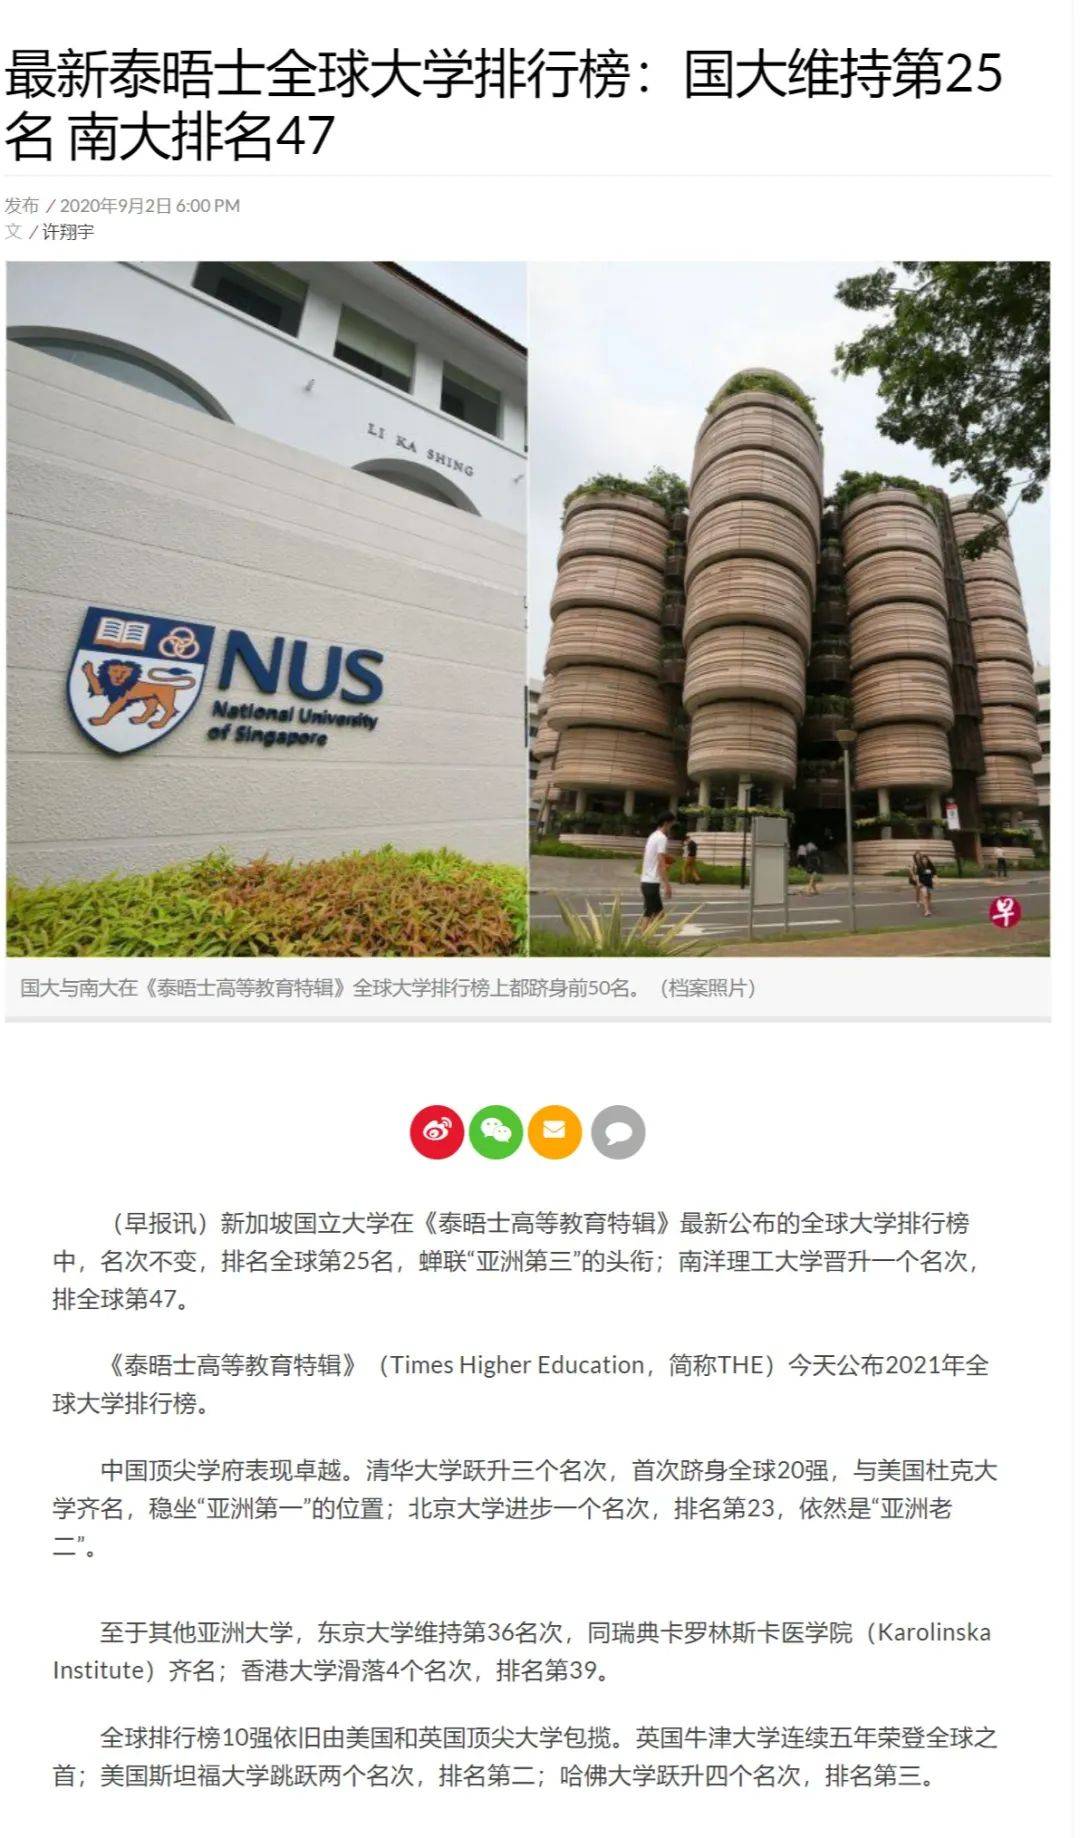 新加坡大学篇 新加坡国立大学